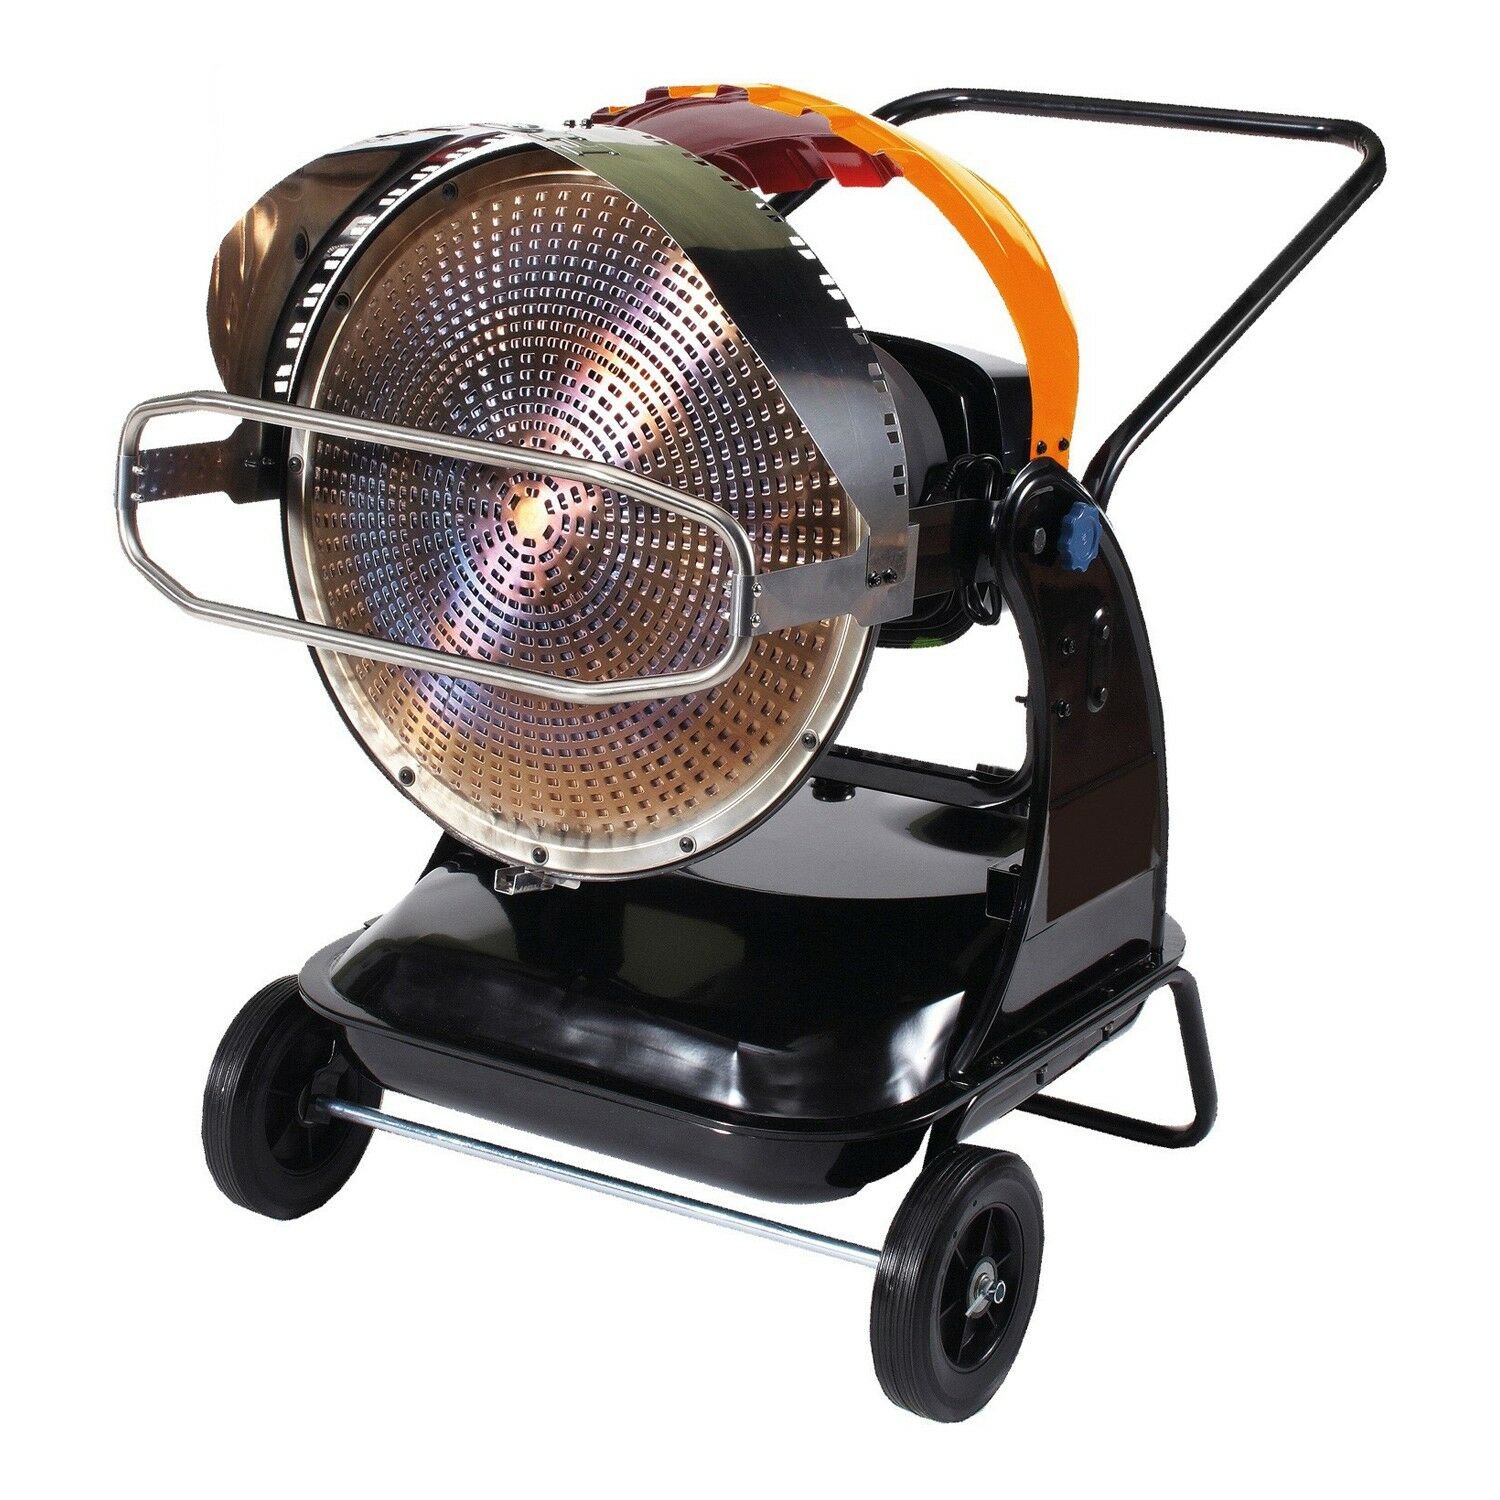 SIP 09312 Fireball 1822 Infrared Diesel Heater